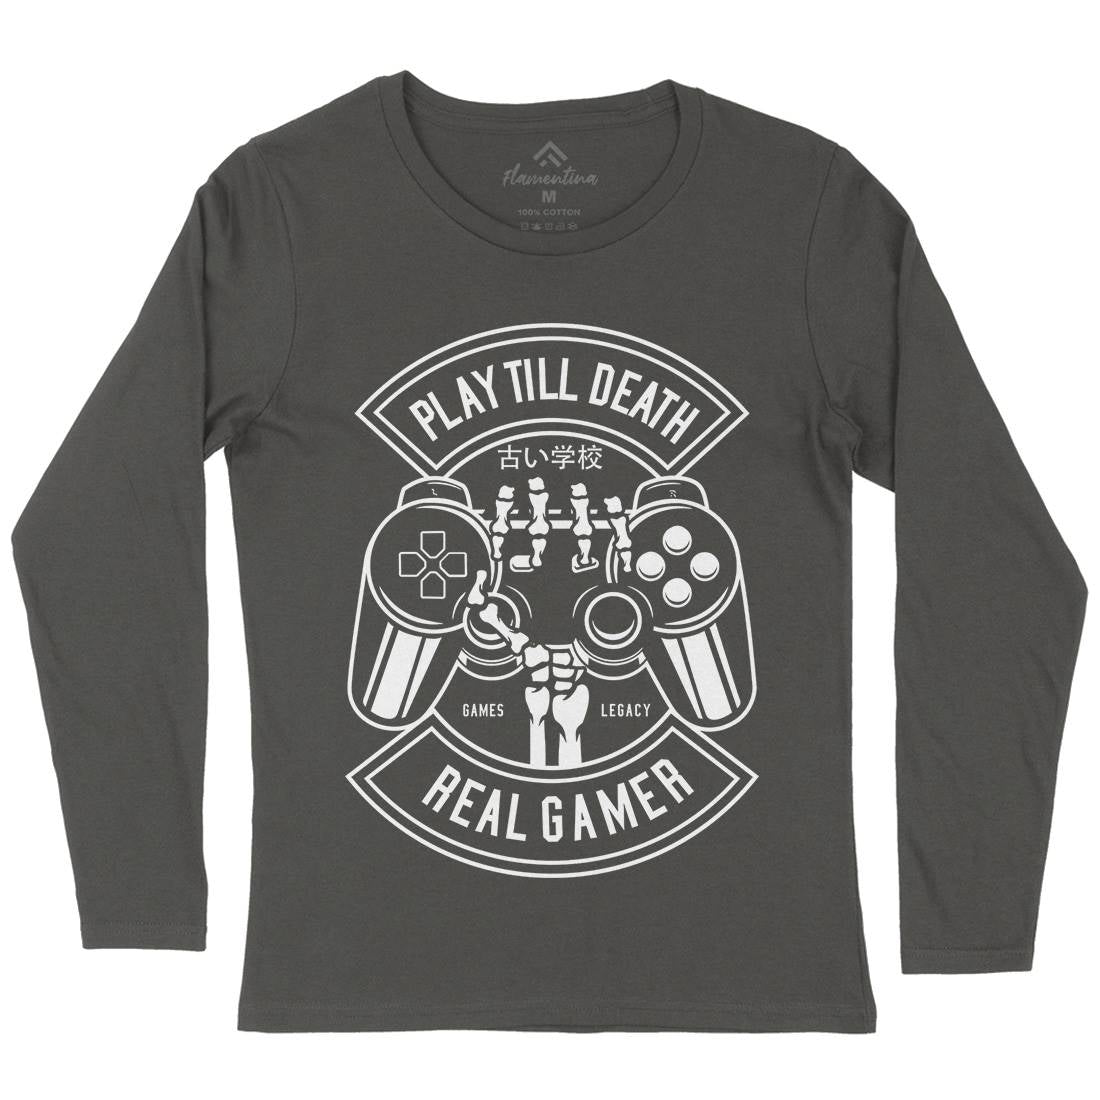 Play Till Death Womens Long Sleeve T-Shirt Geek B603